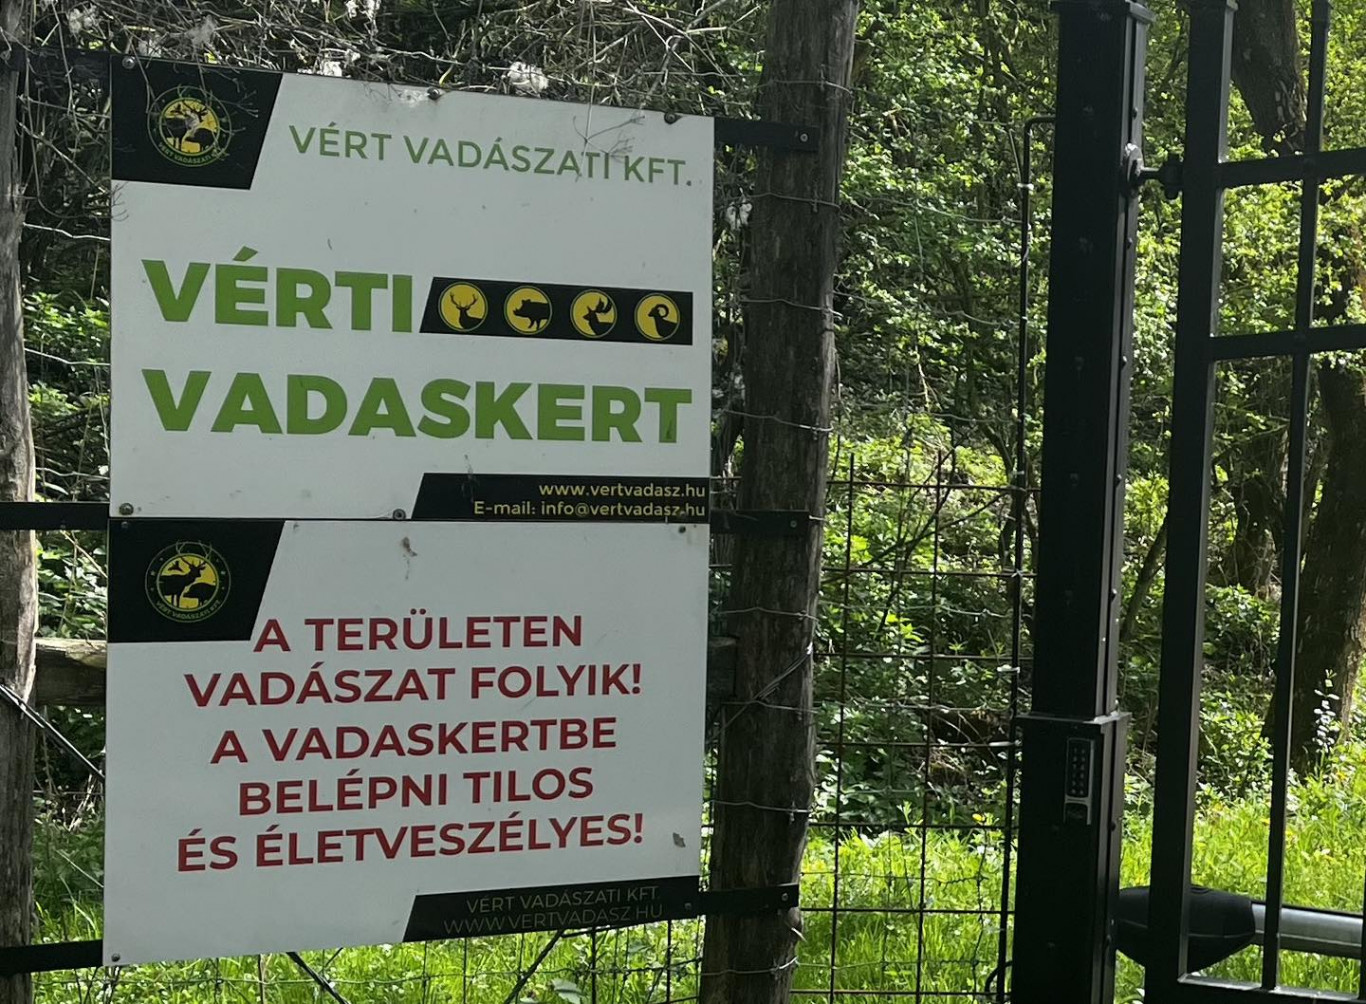 Olyan bekerített vadaskertet tart fenn Mészáros Lőrinc, ahol a fővárosi Állatkert területének harmadára beszorított nagyvadakat lőhetnek le darabonként milliókért